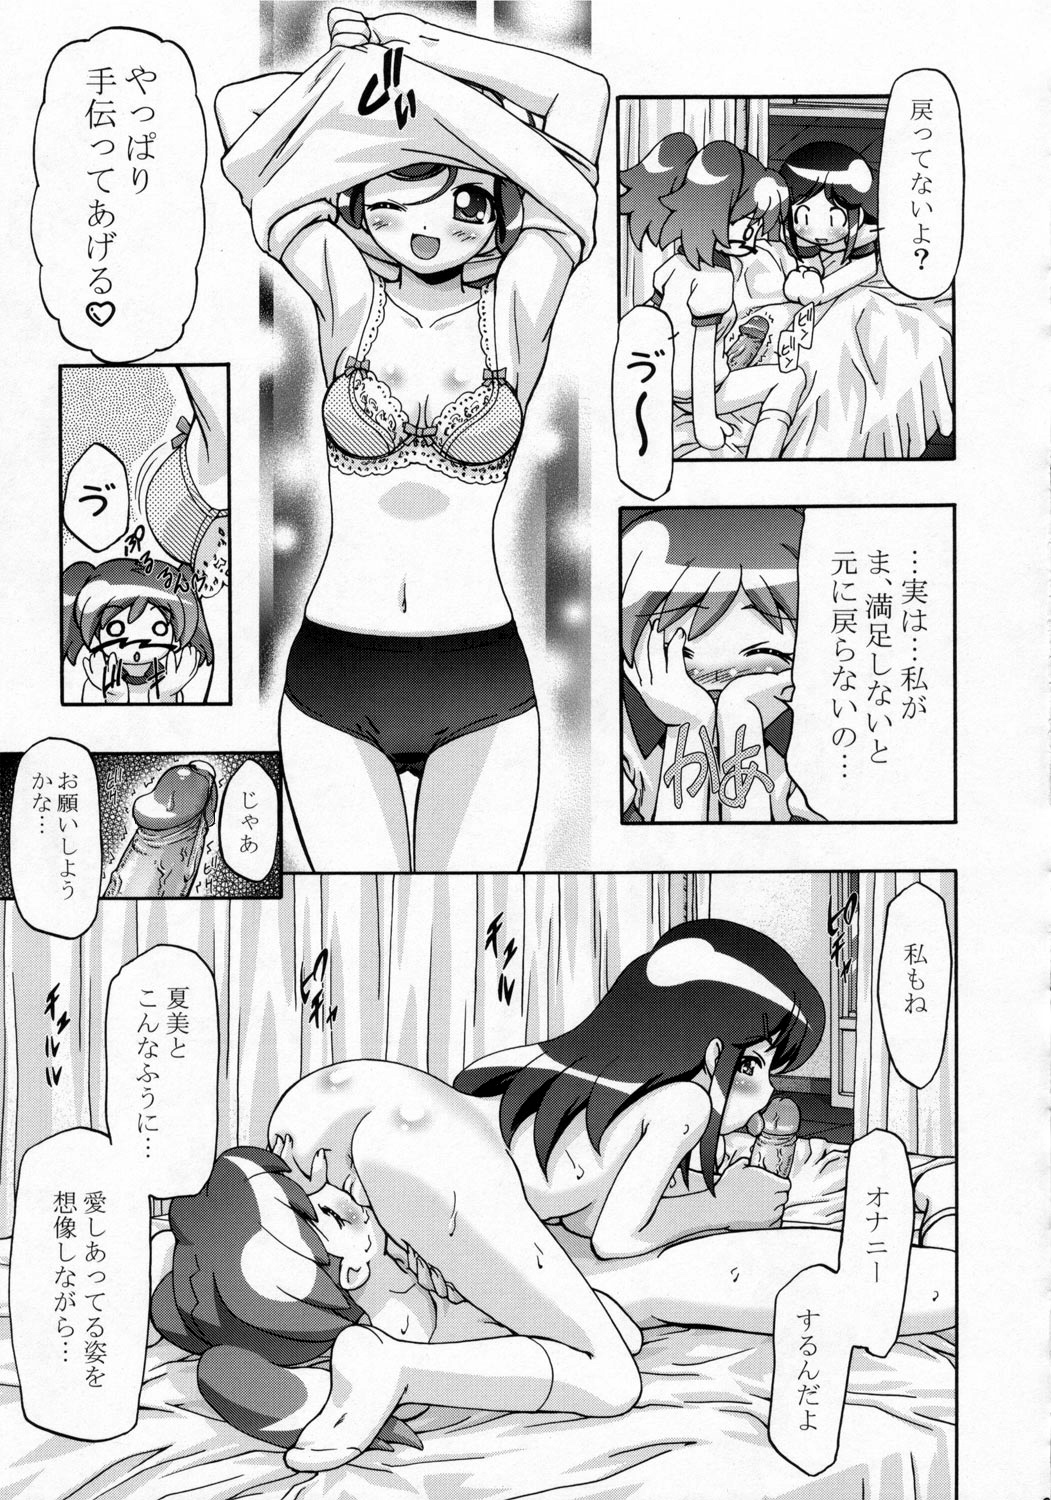 (SC31) [Gambler Club (Kousaka Jun)] Natsu Yuki - Summer Snow (Keroro Gunsou) page 20 full